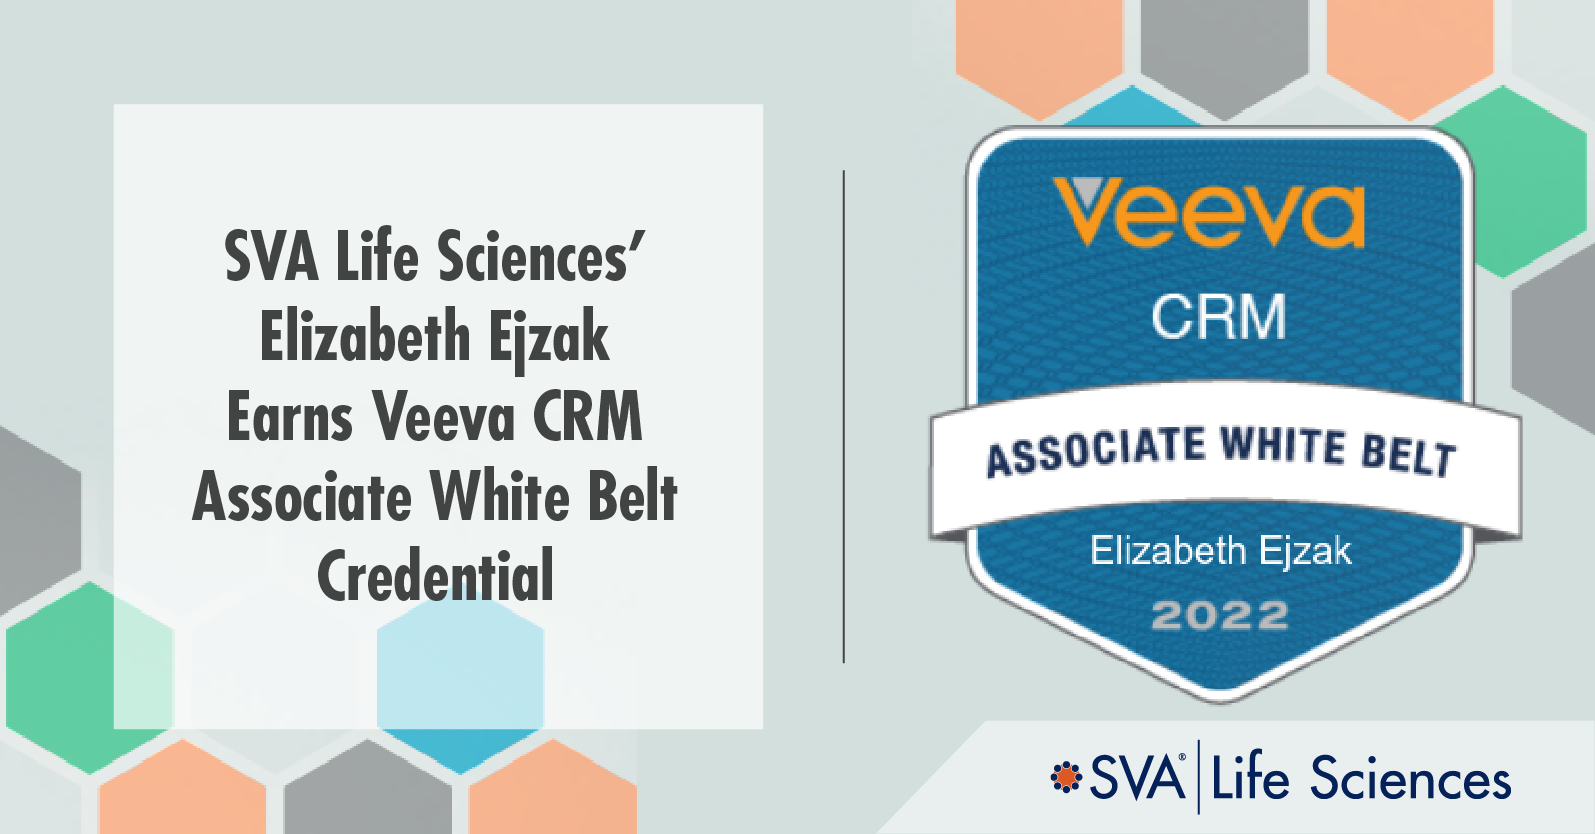 SVA Life Sciences Ejzak Earns Veeva CRM Associate White Belt